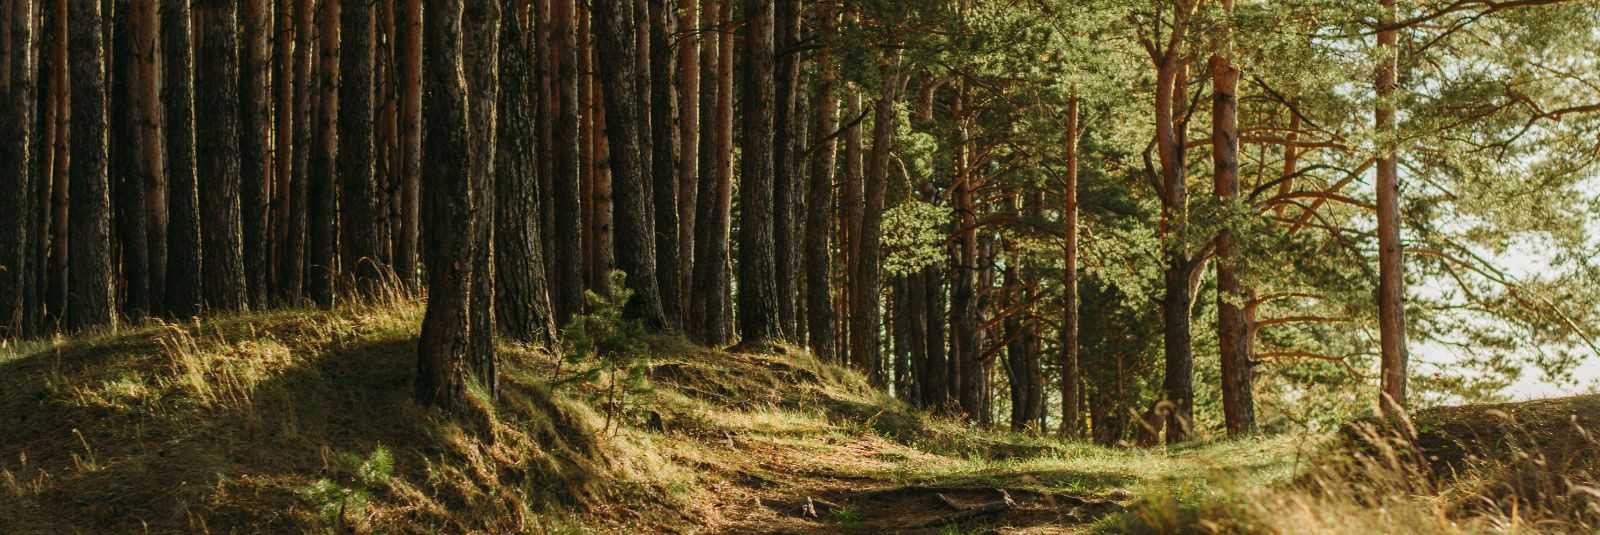 Eesti metsad on meie rahvuslik aare, olles mitte ainult loodusliku iluga, vaid ka majandusliku potentsiaaliga. Forest Reserves OÜ on 100% Eesti kapitalil põhine